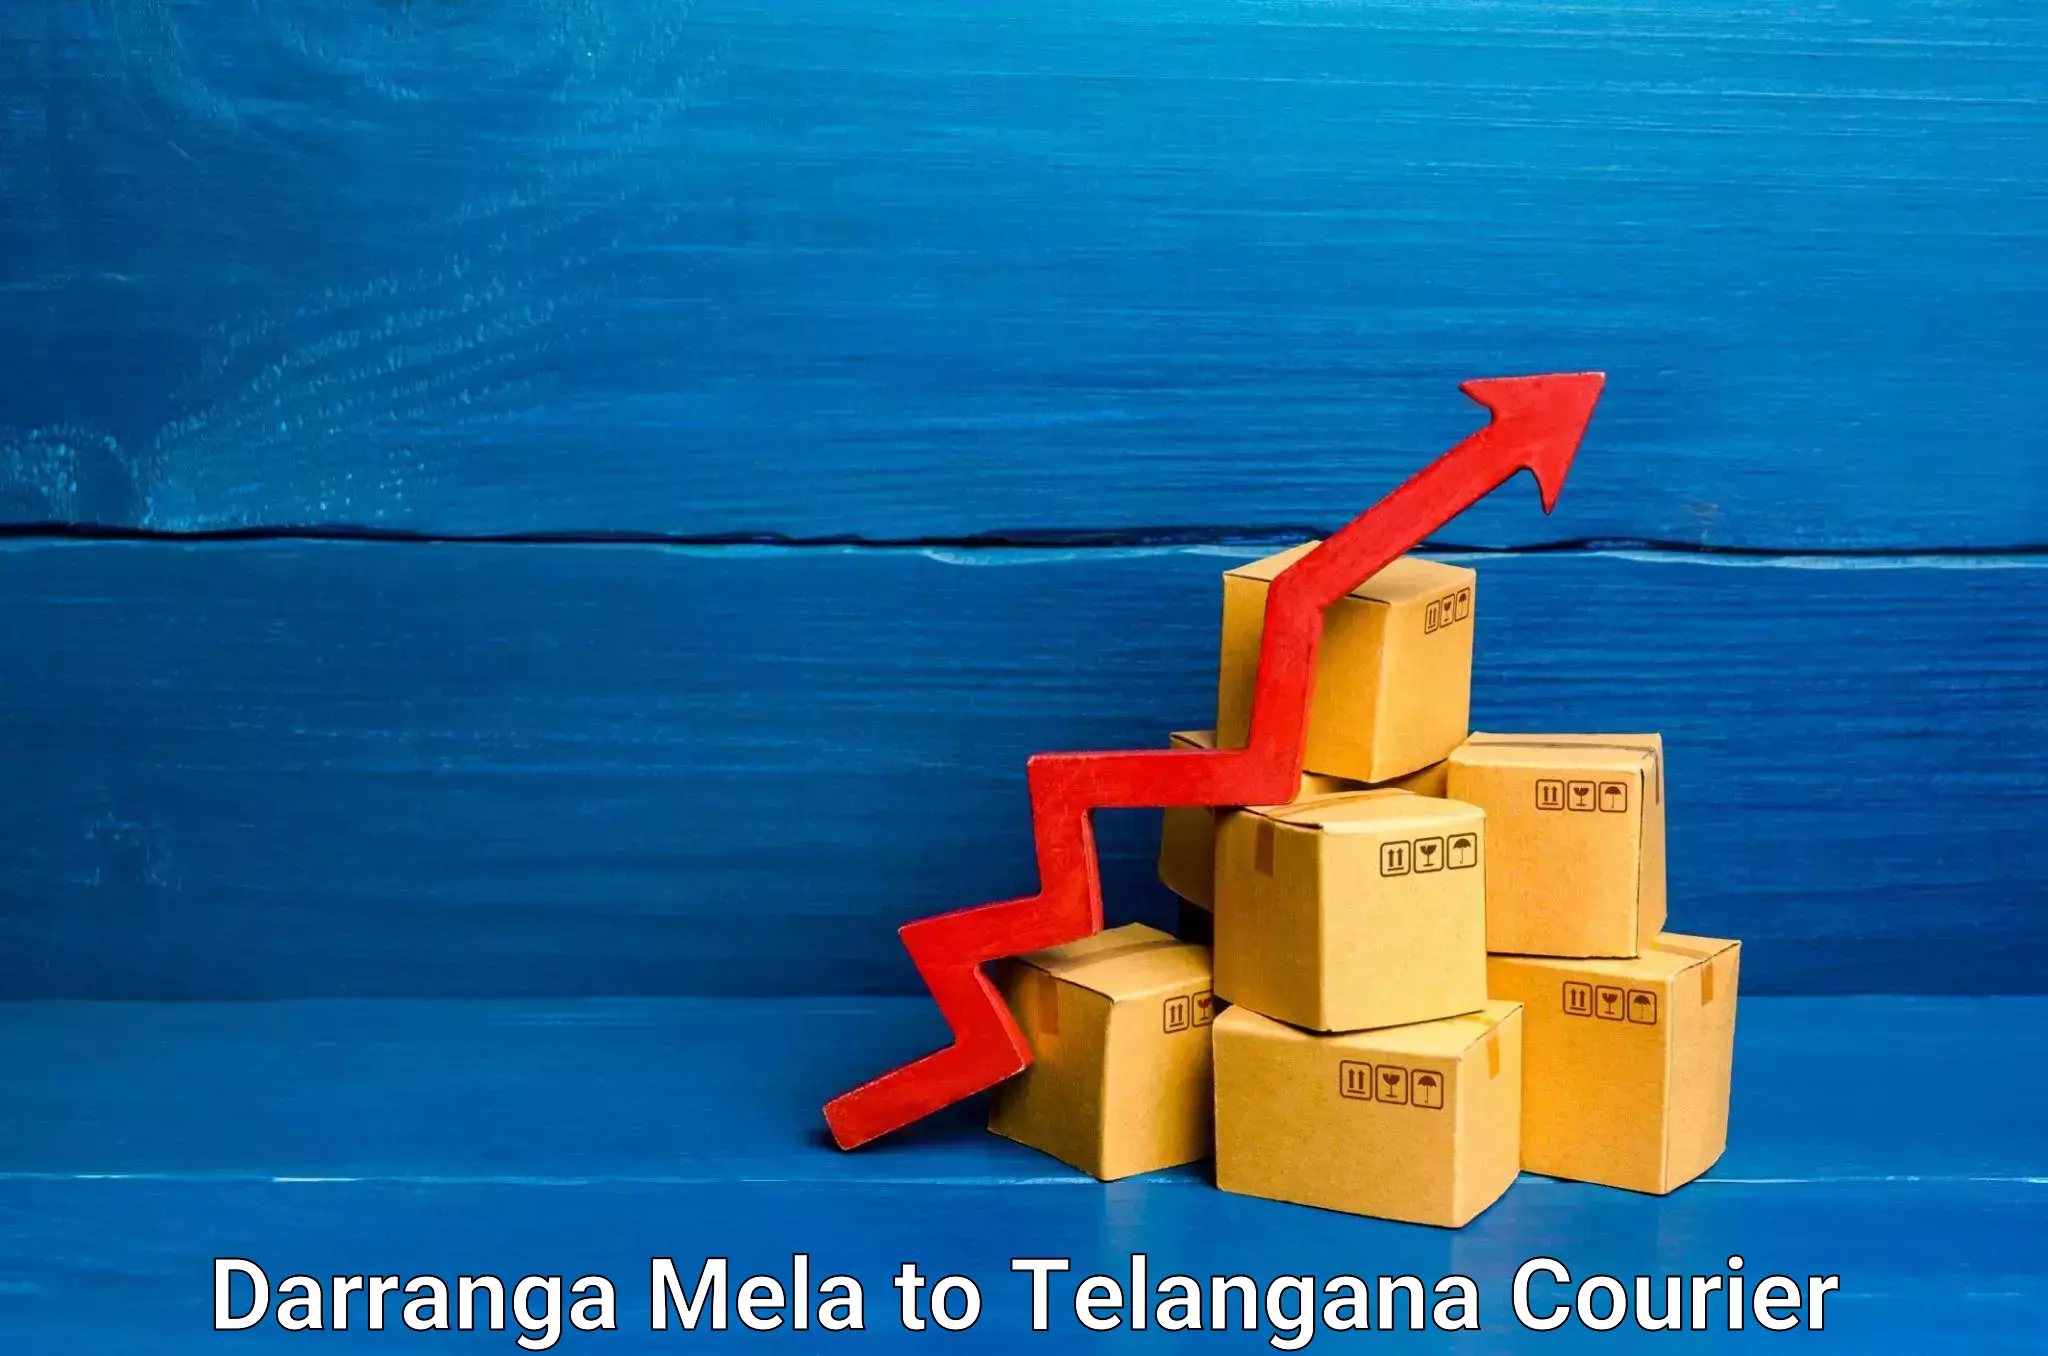 Efficient logistics management in Darranga Mela to Chennur